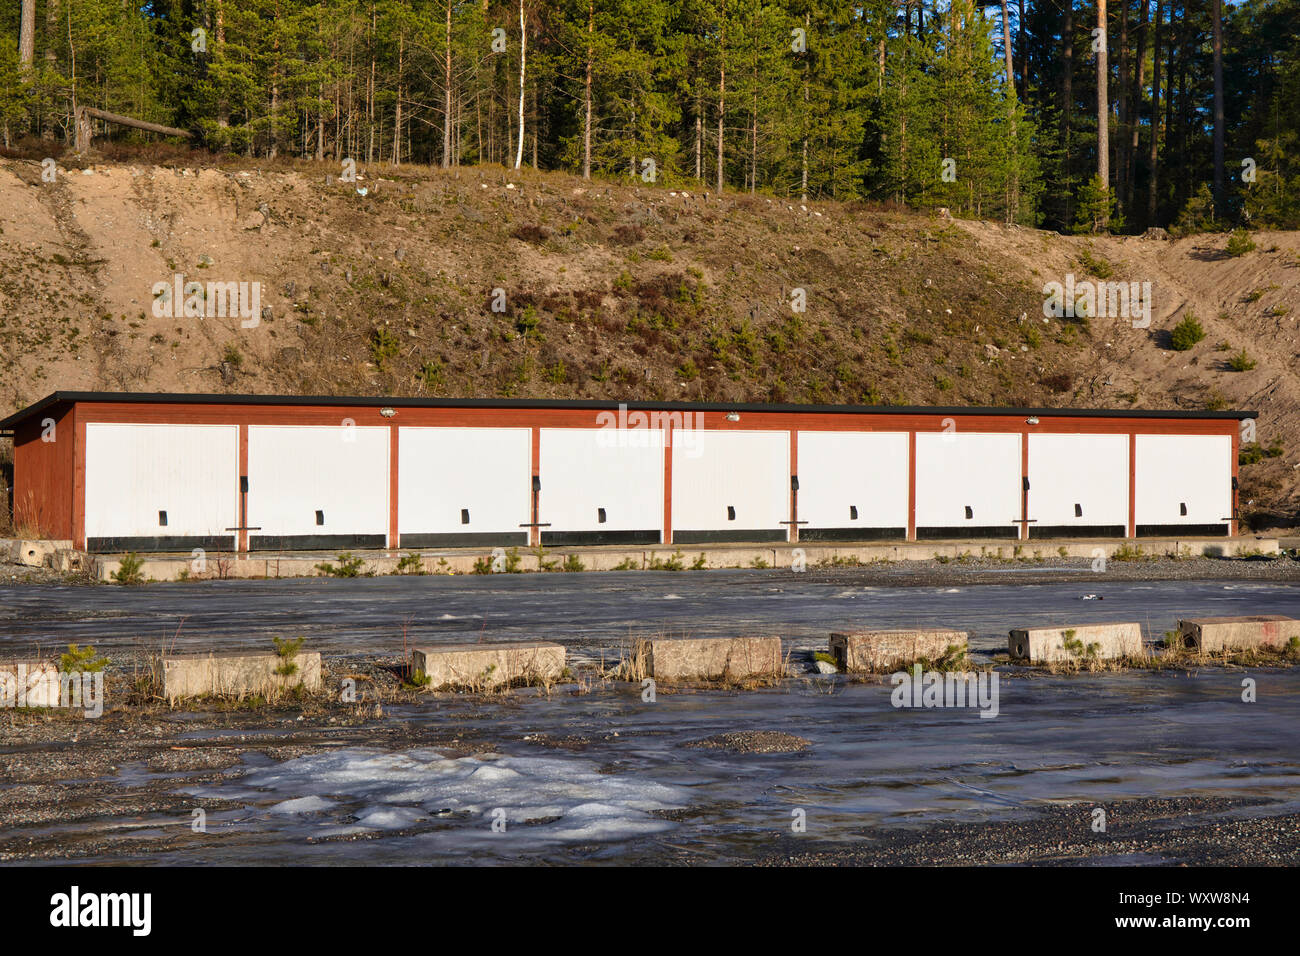 Line of garages in winter, Sweden, Scandinavia Stock Photo